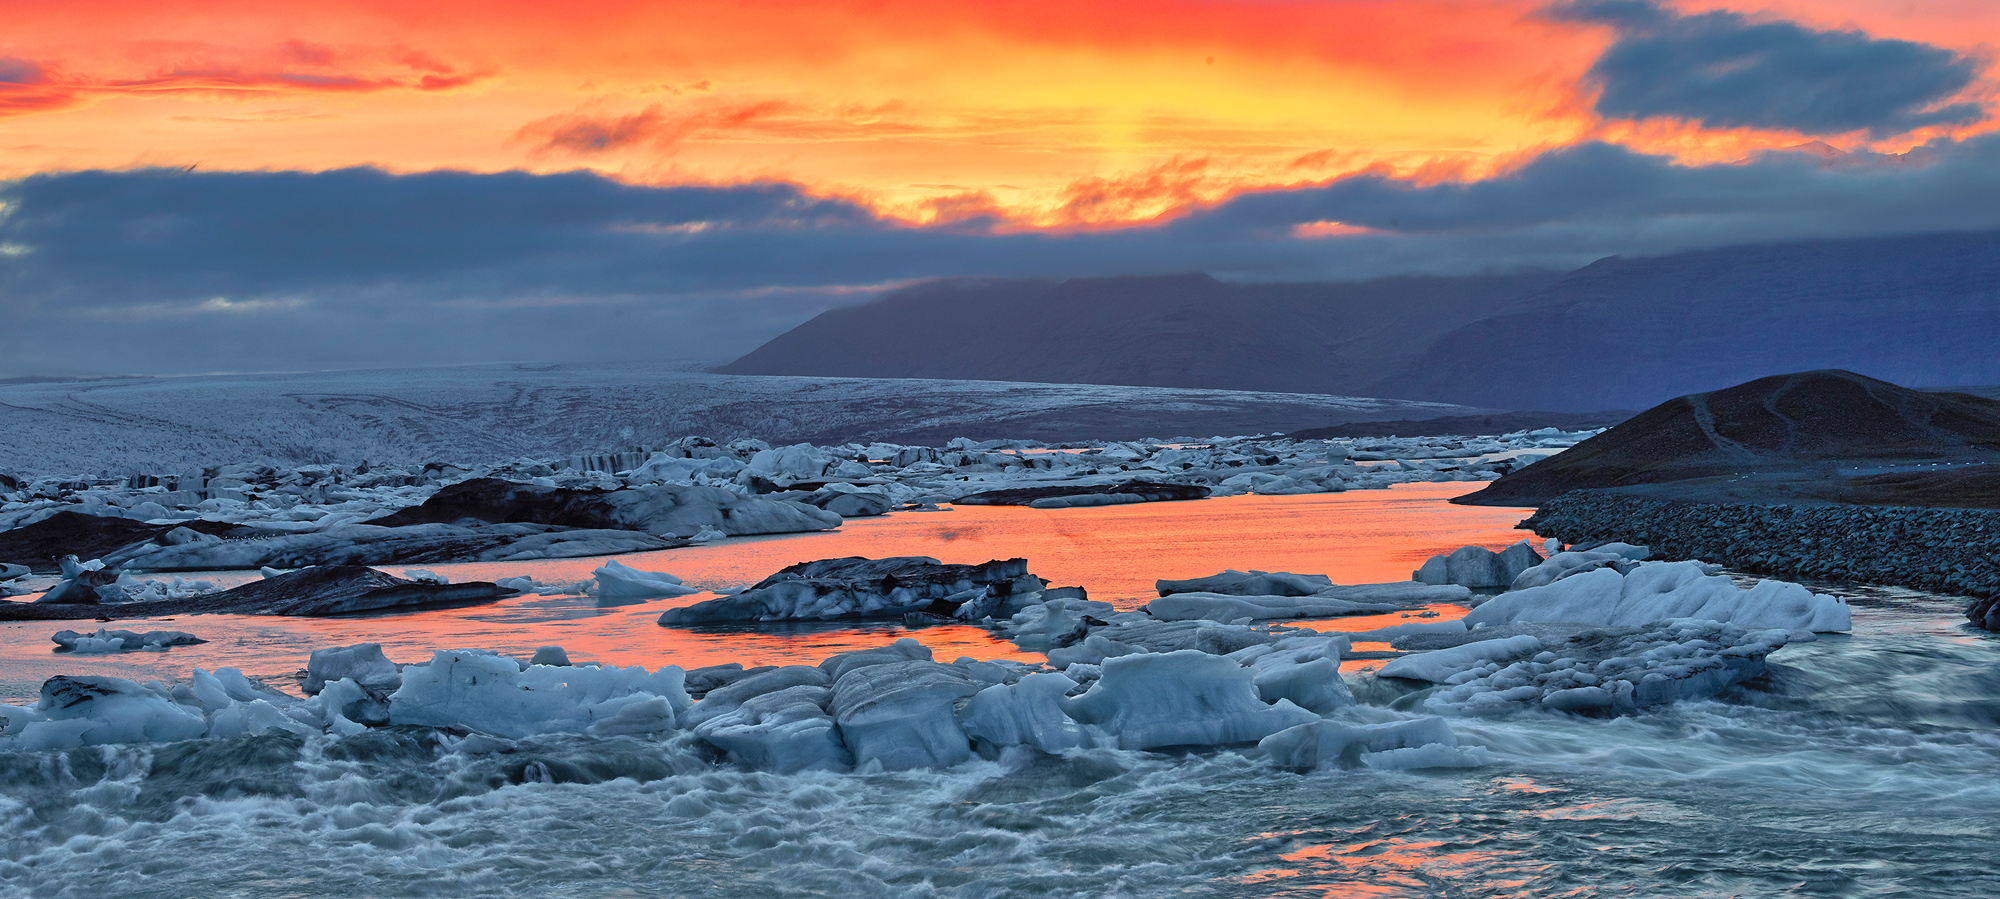 Sunrise - Sunset, Iceland, Single exposure pano